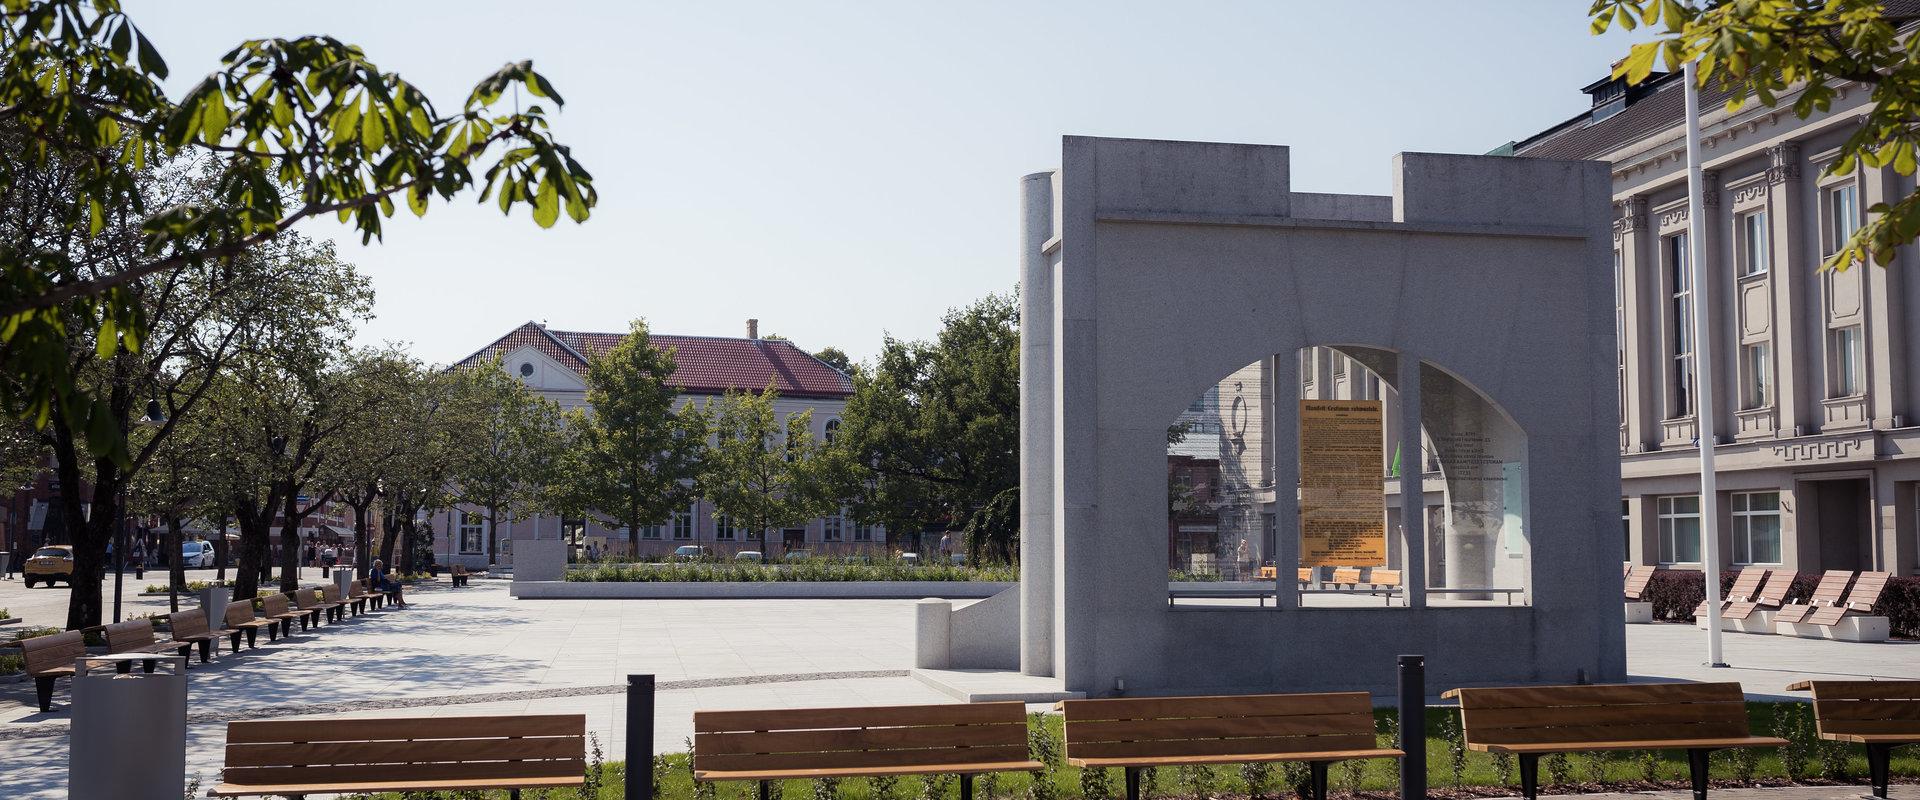 Eesti Vabariigi iseseisvuse väljakuulutamise mälestusmärk